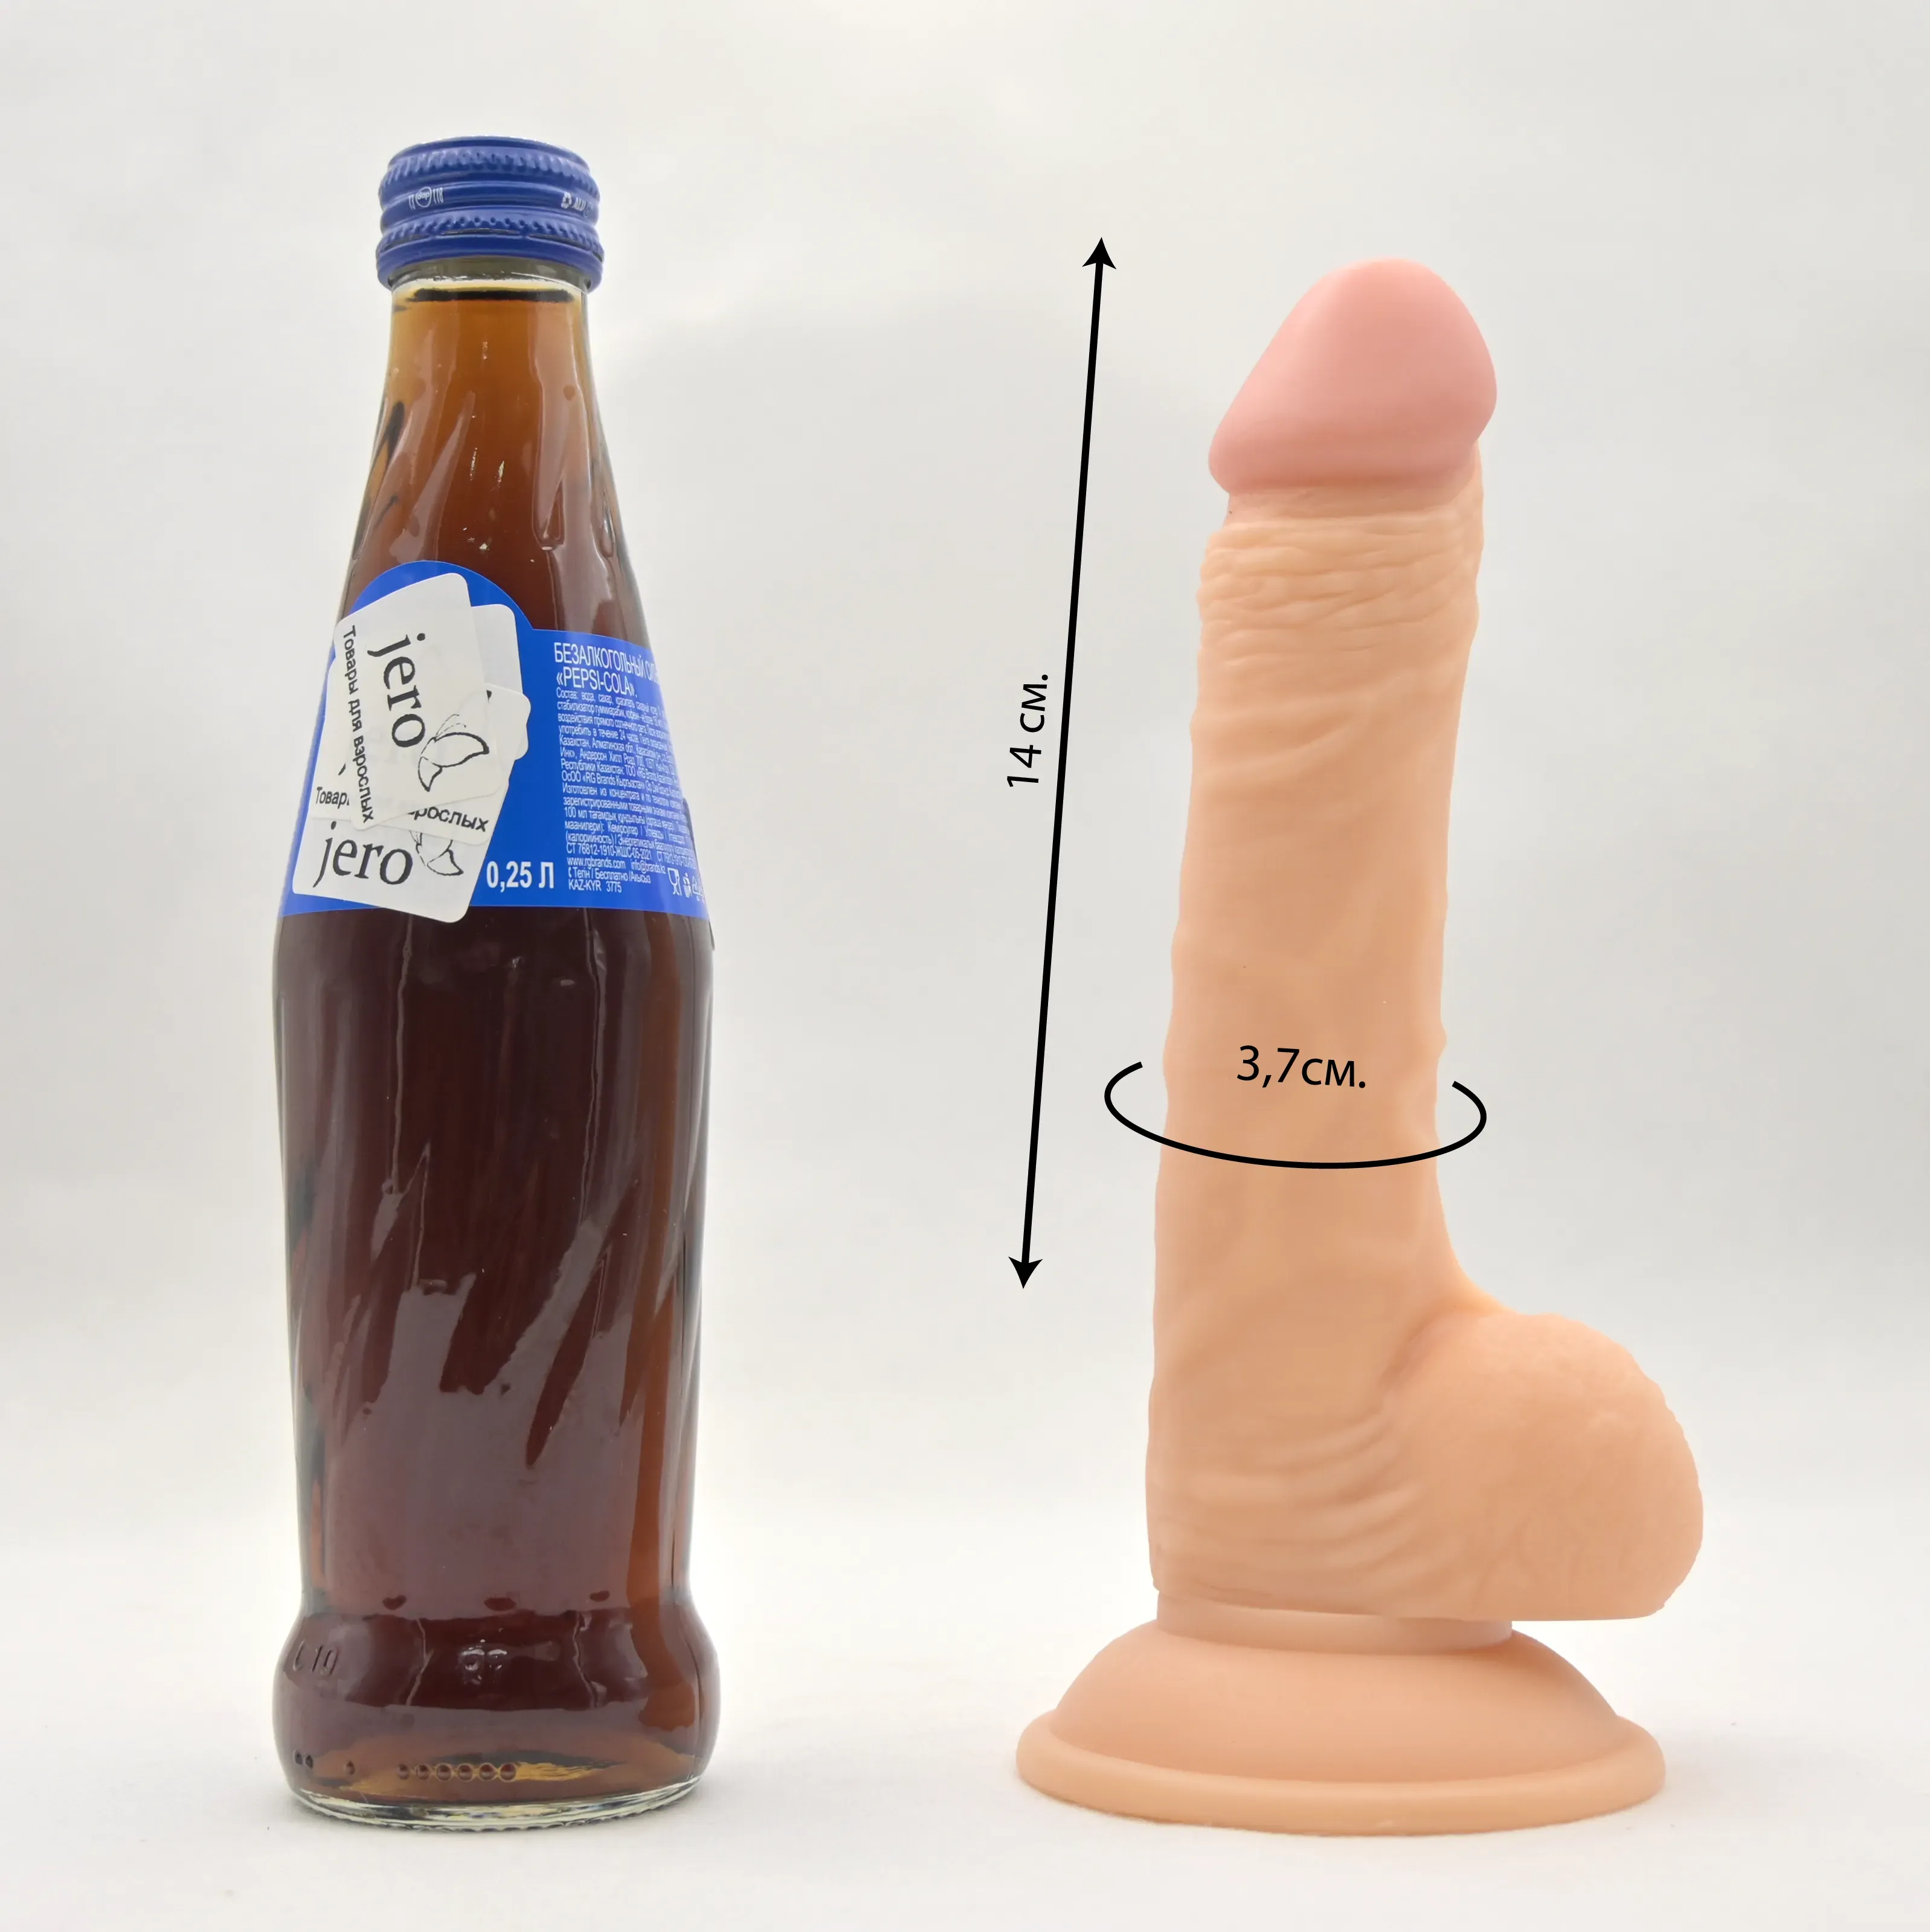 Размеры и сравнение с бутылкой пепси